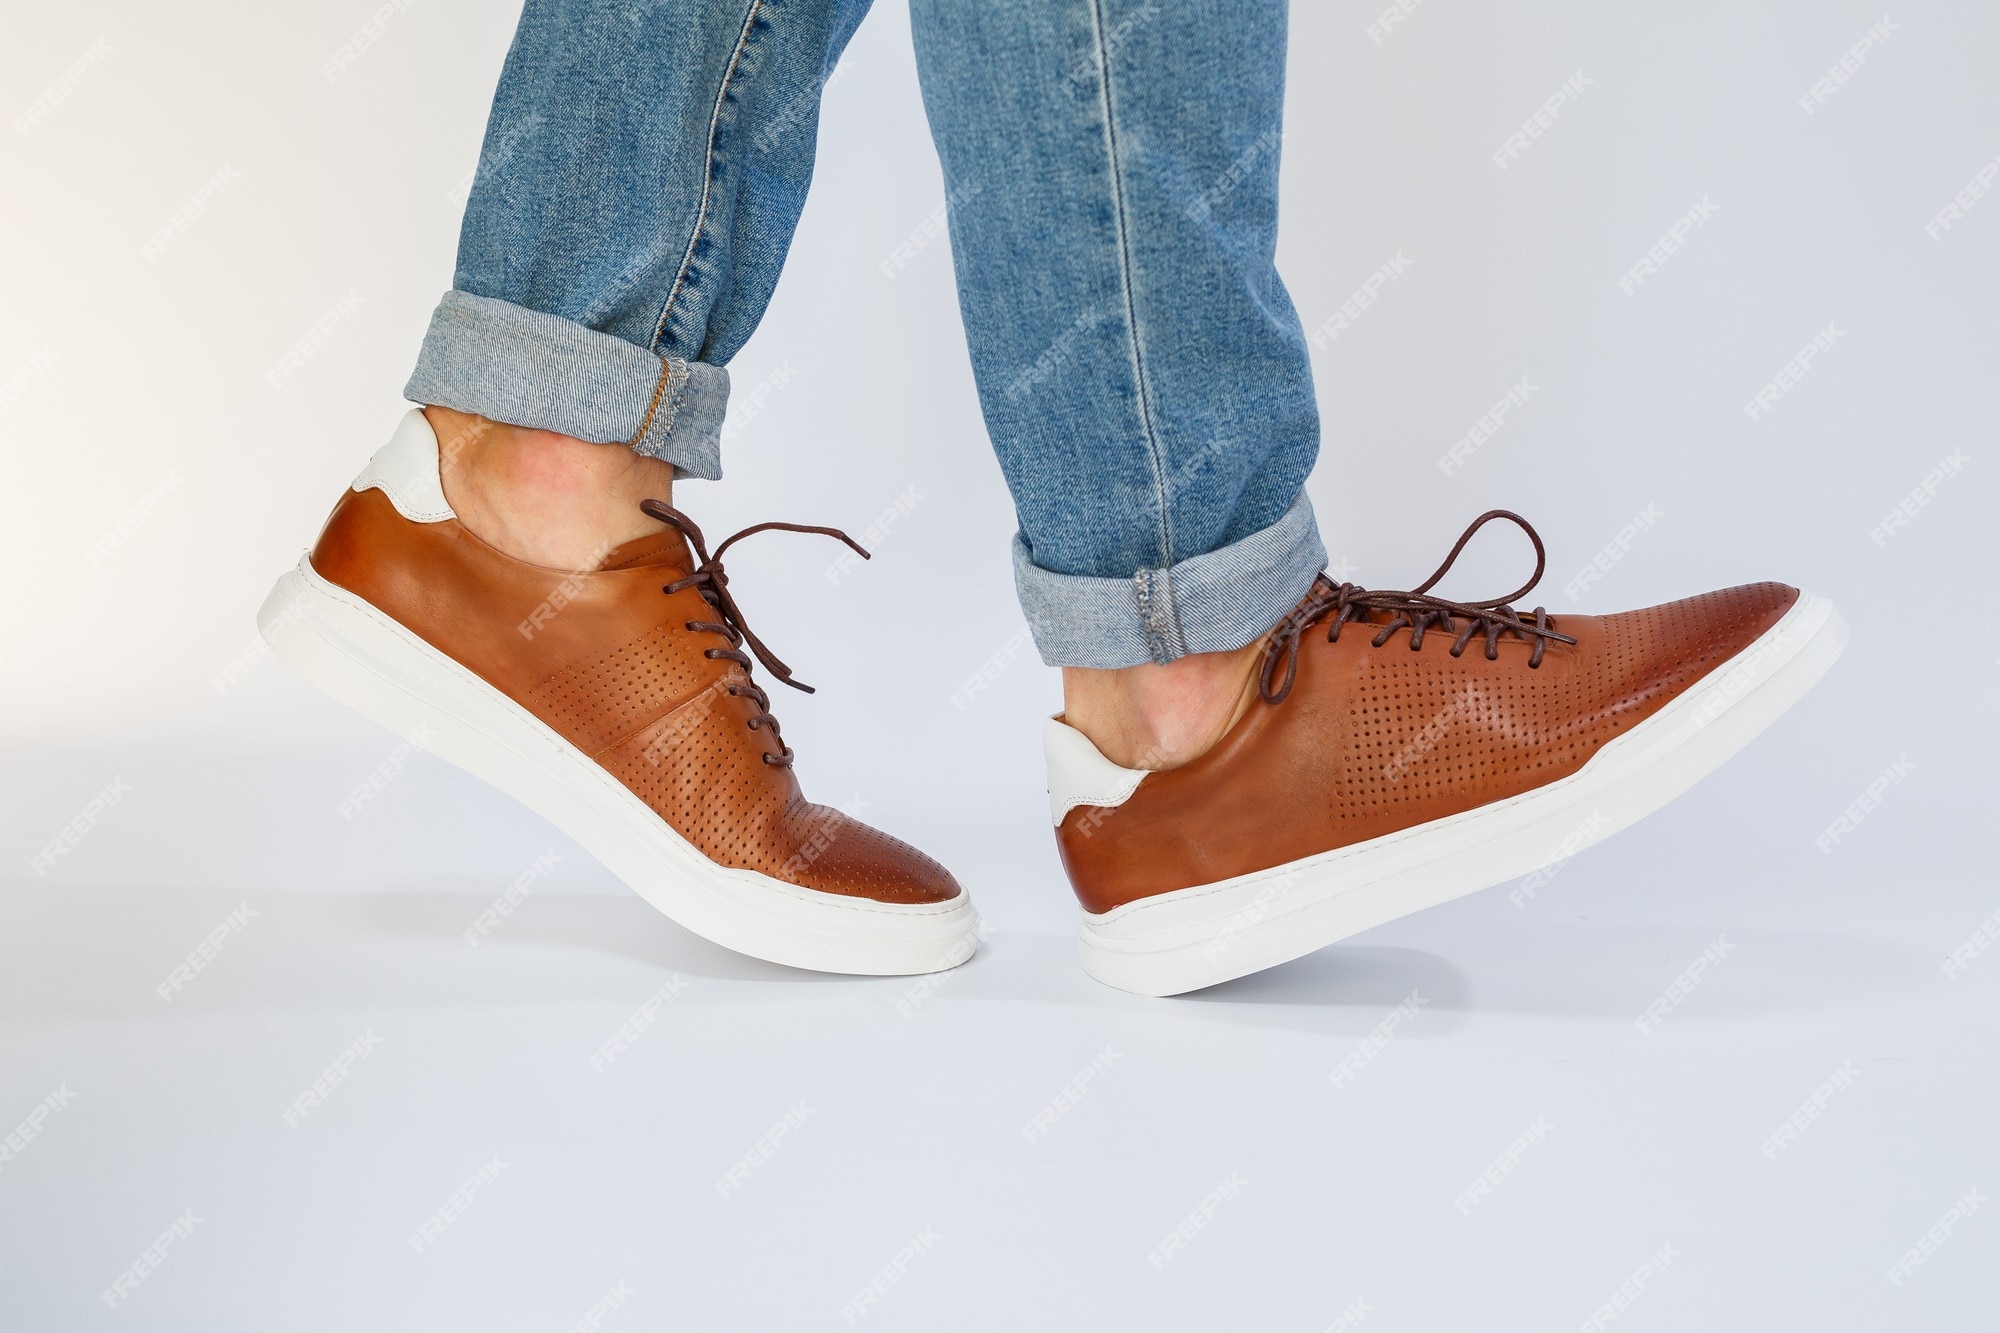 Los zapatos casuales para hombre son marrones con hombres de cuero natural en el zapato con zapatos de encaje | Foto Premium